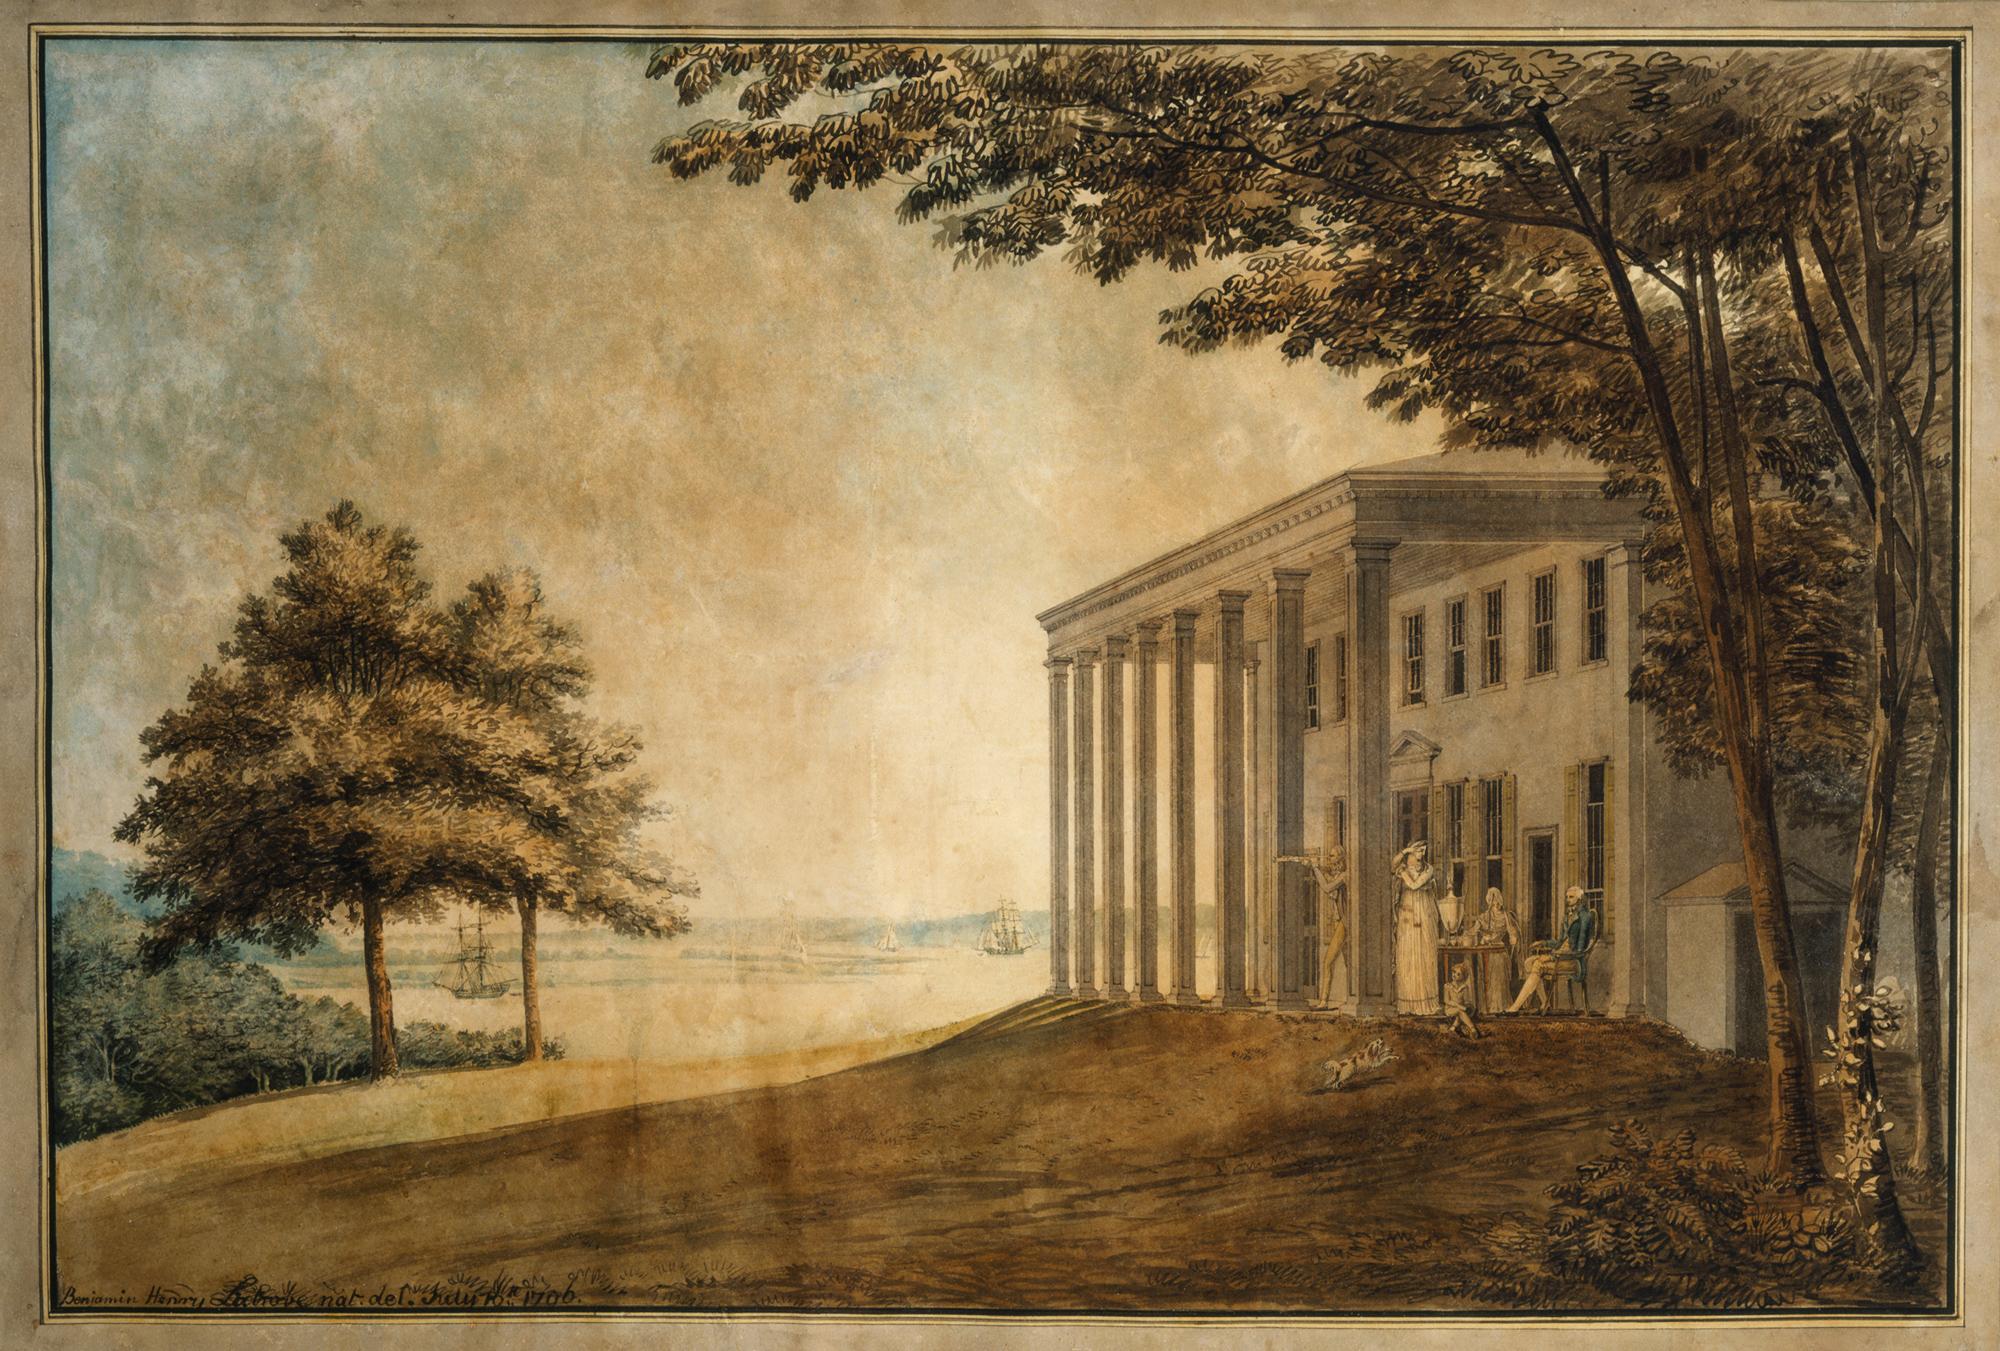 Latrobe's "A View of Mount Vernon with the Washington Family". MVLA